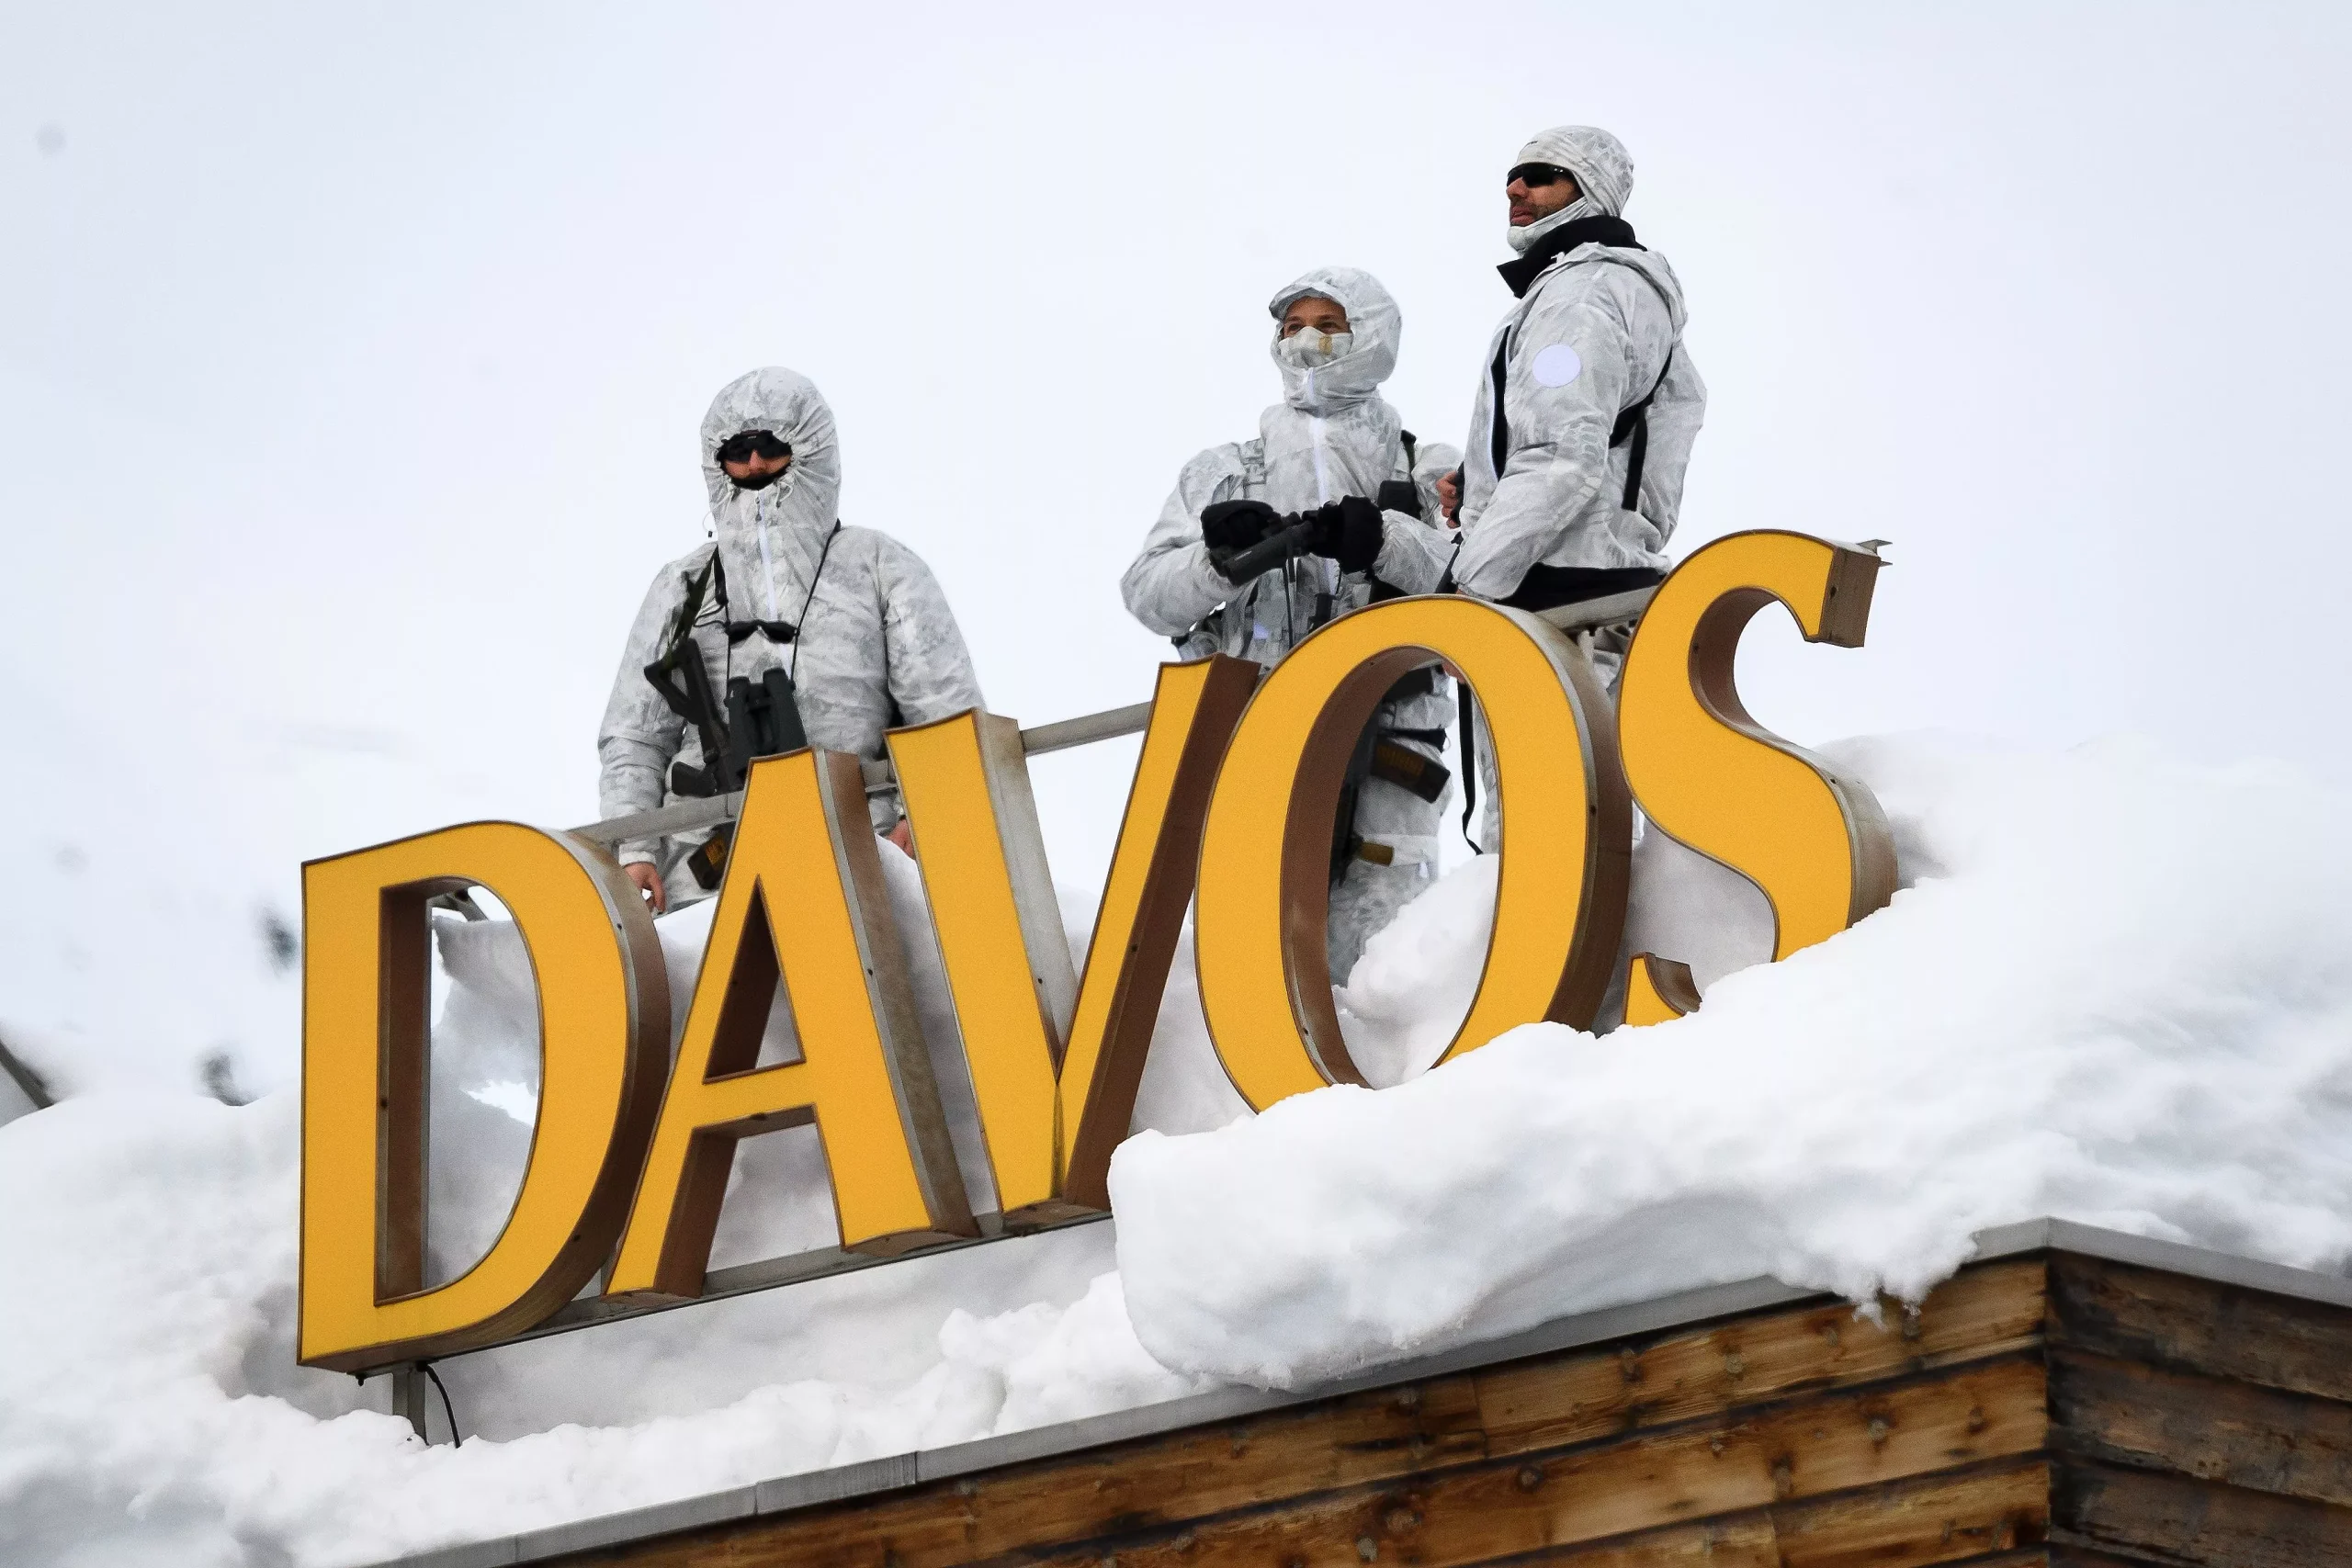 Οικονομικό συνέδριο Νταβός: 5.000 στρατιώτες θα φρουρούν  τον Κλάους Σβαμπ και τους προσκεκλημένους  του!